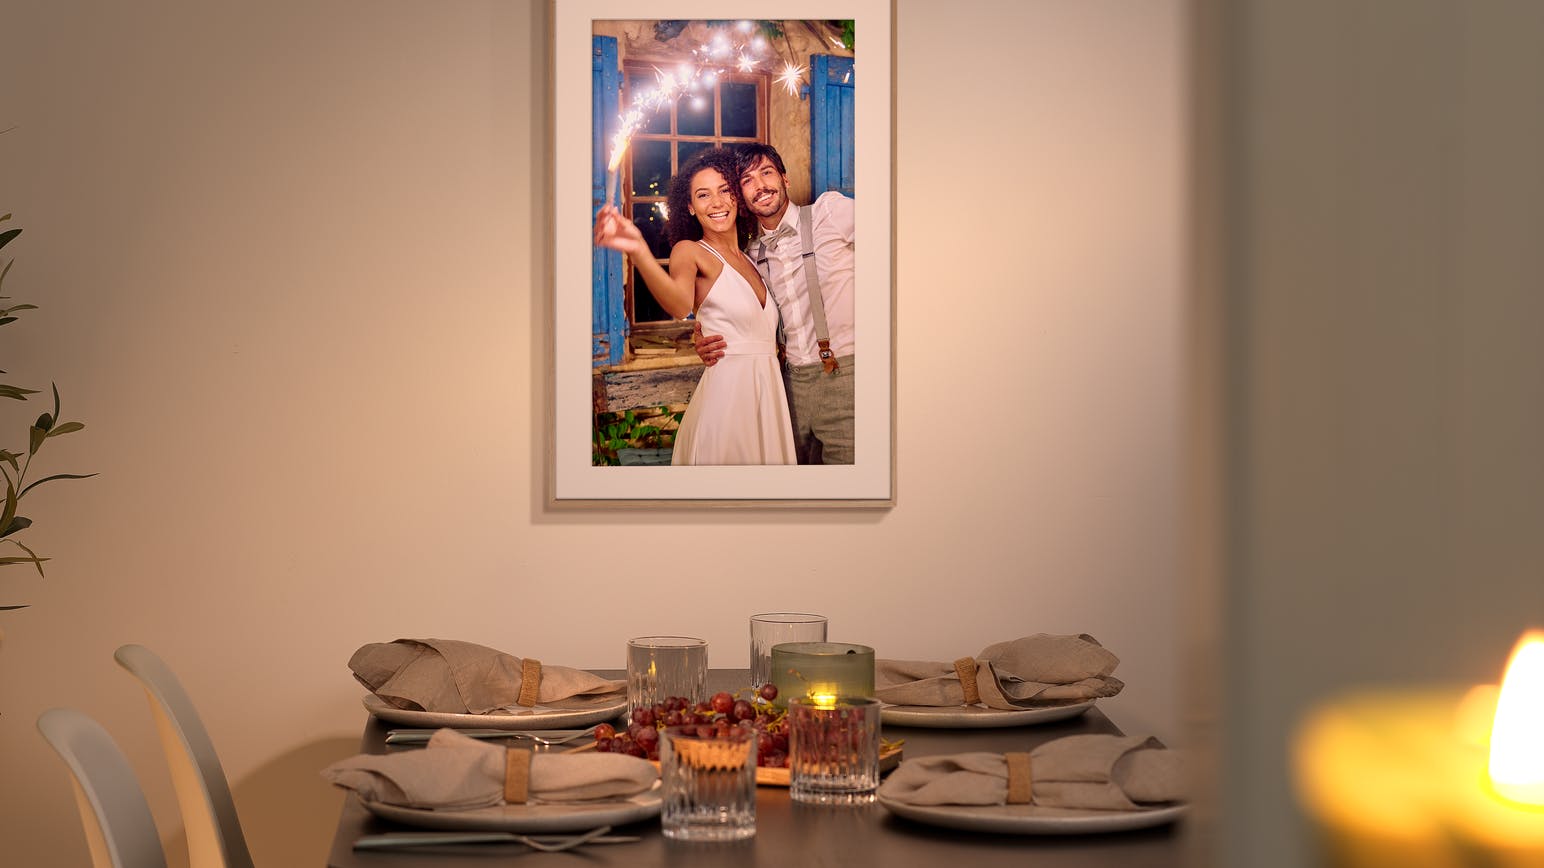 Tableau dans un cadre avec une photo de mariage sur un mur gris